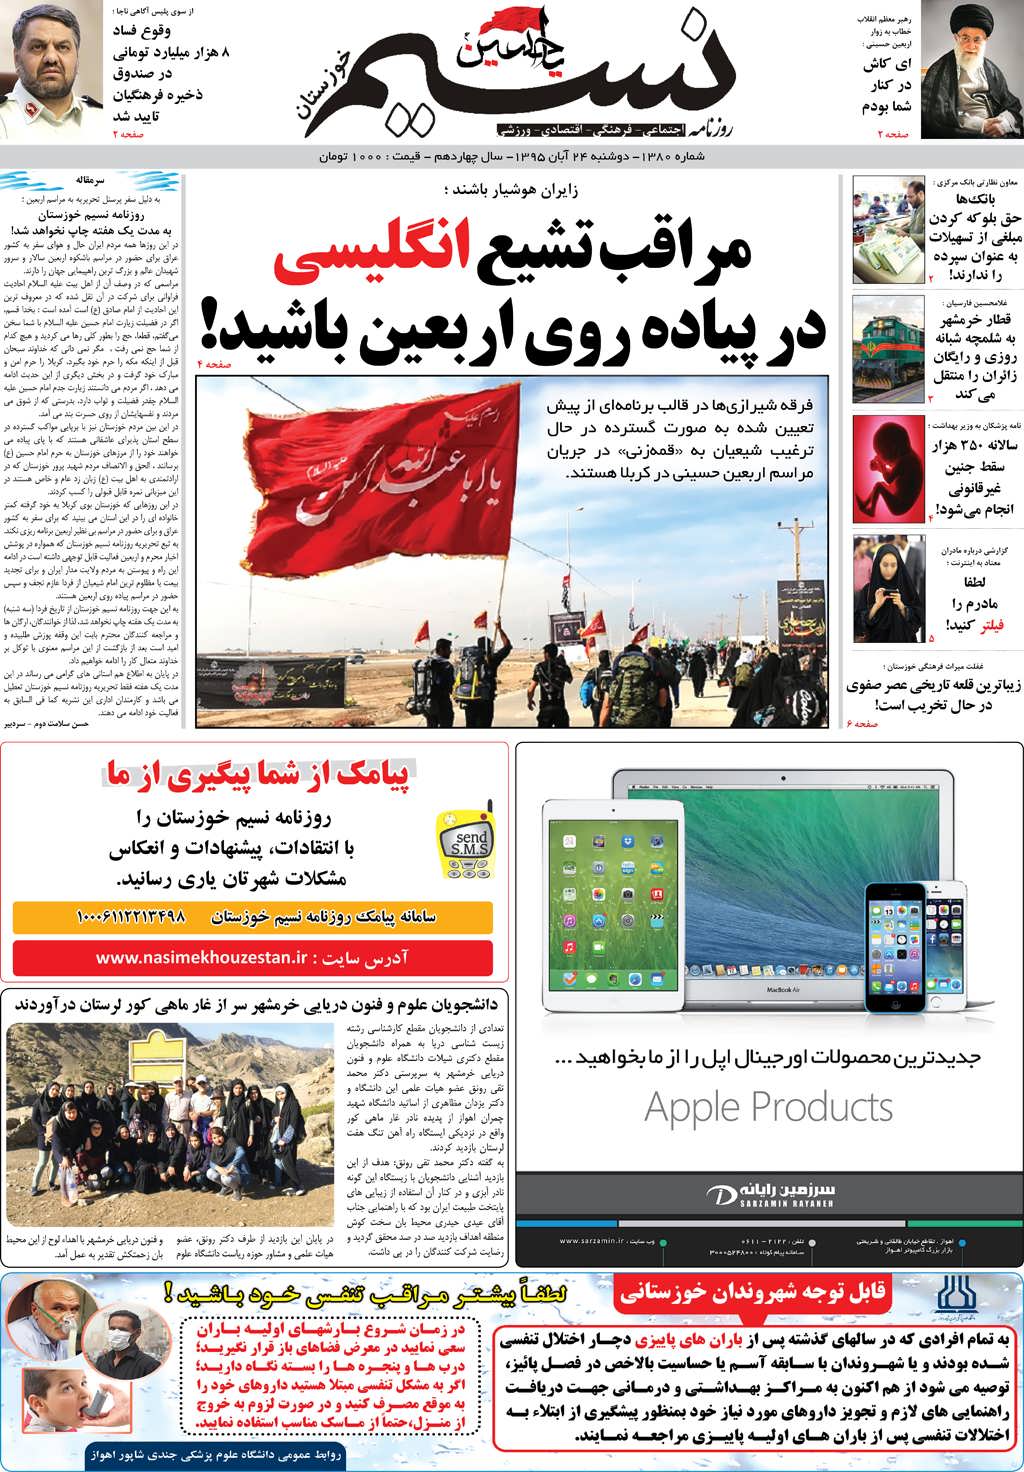 صفحه اصلی روزنامه نسیم شماره 1380